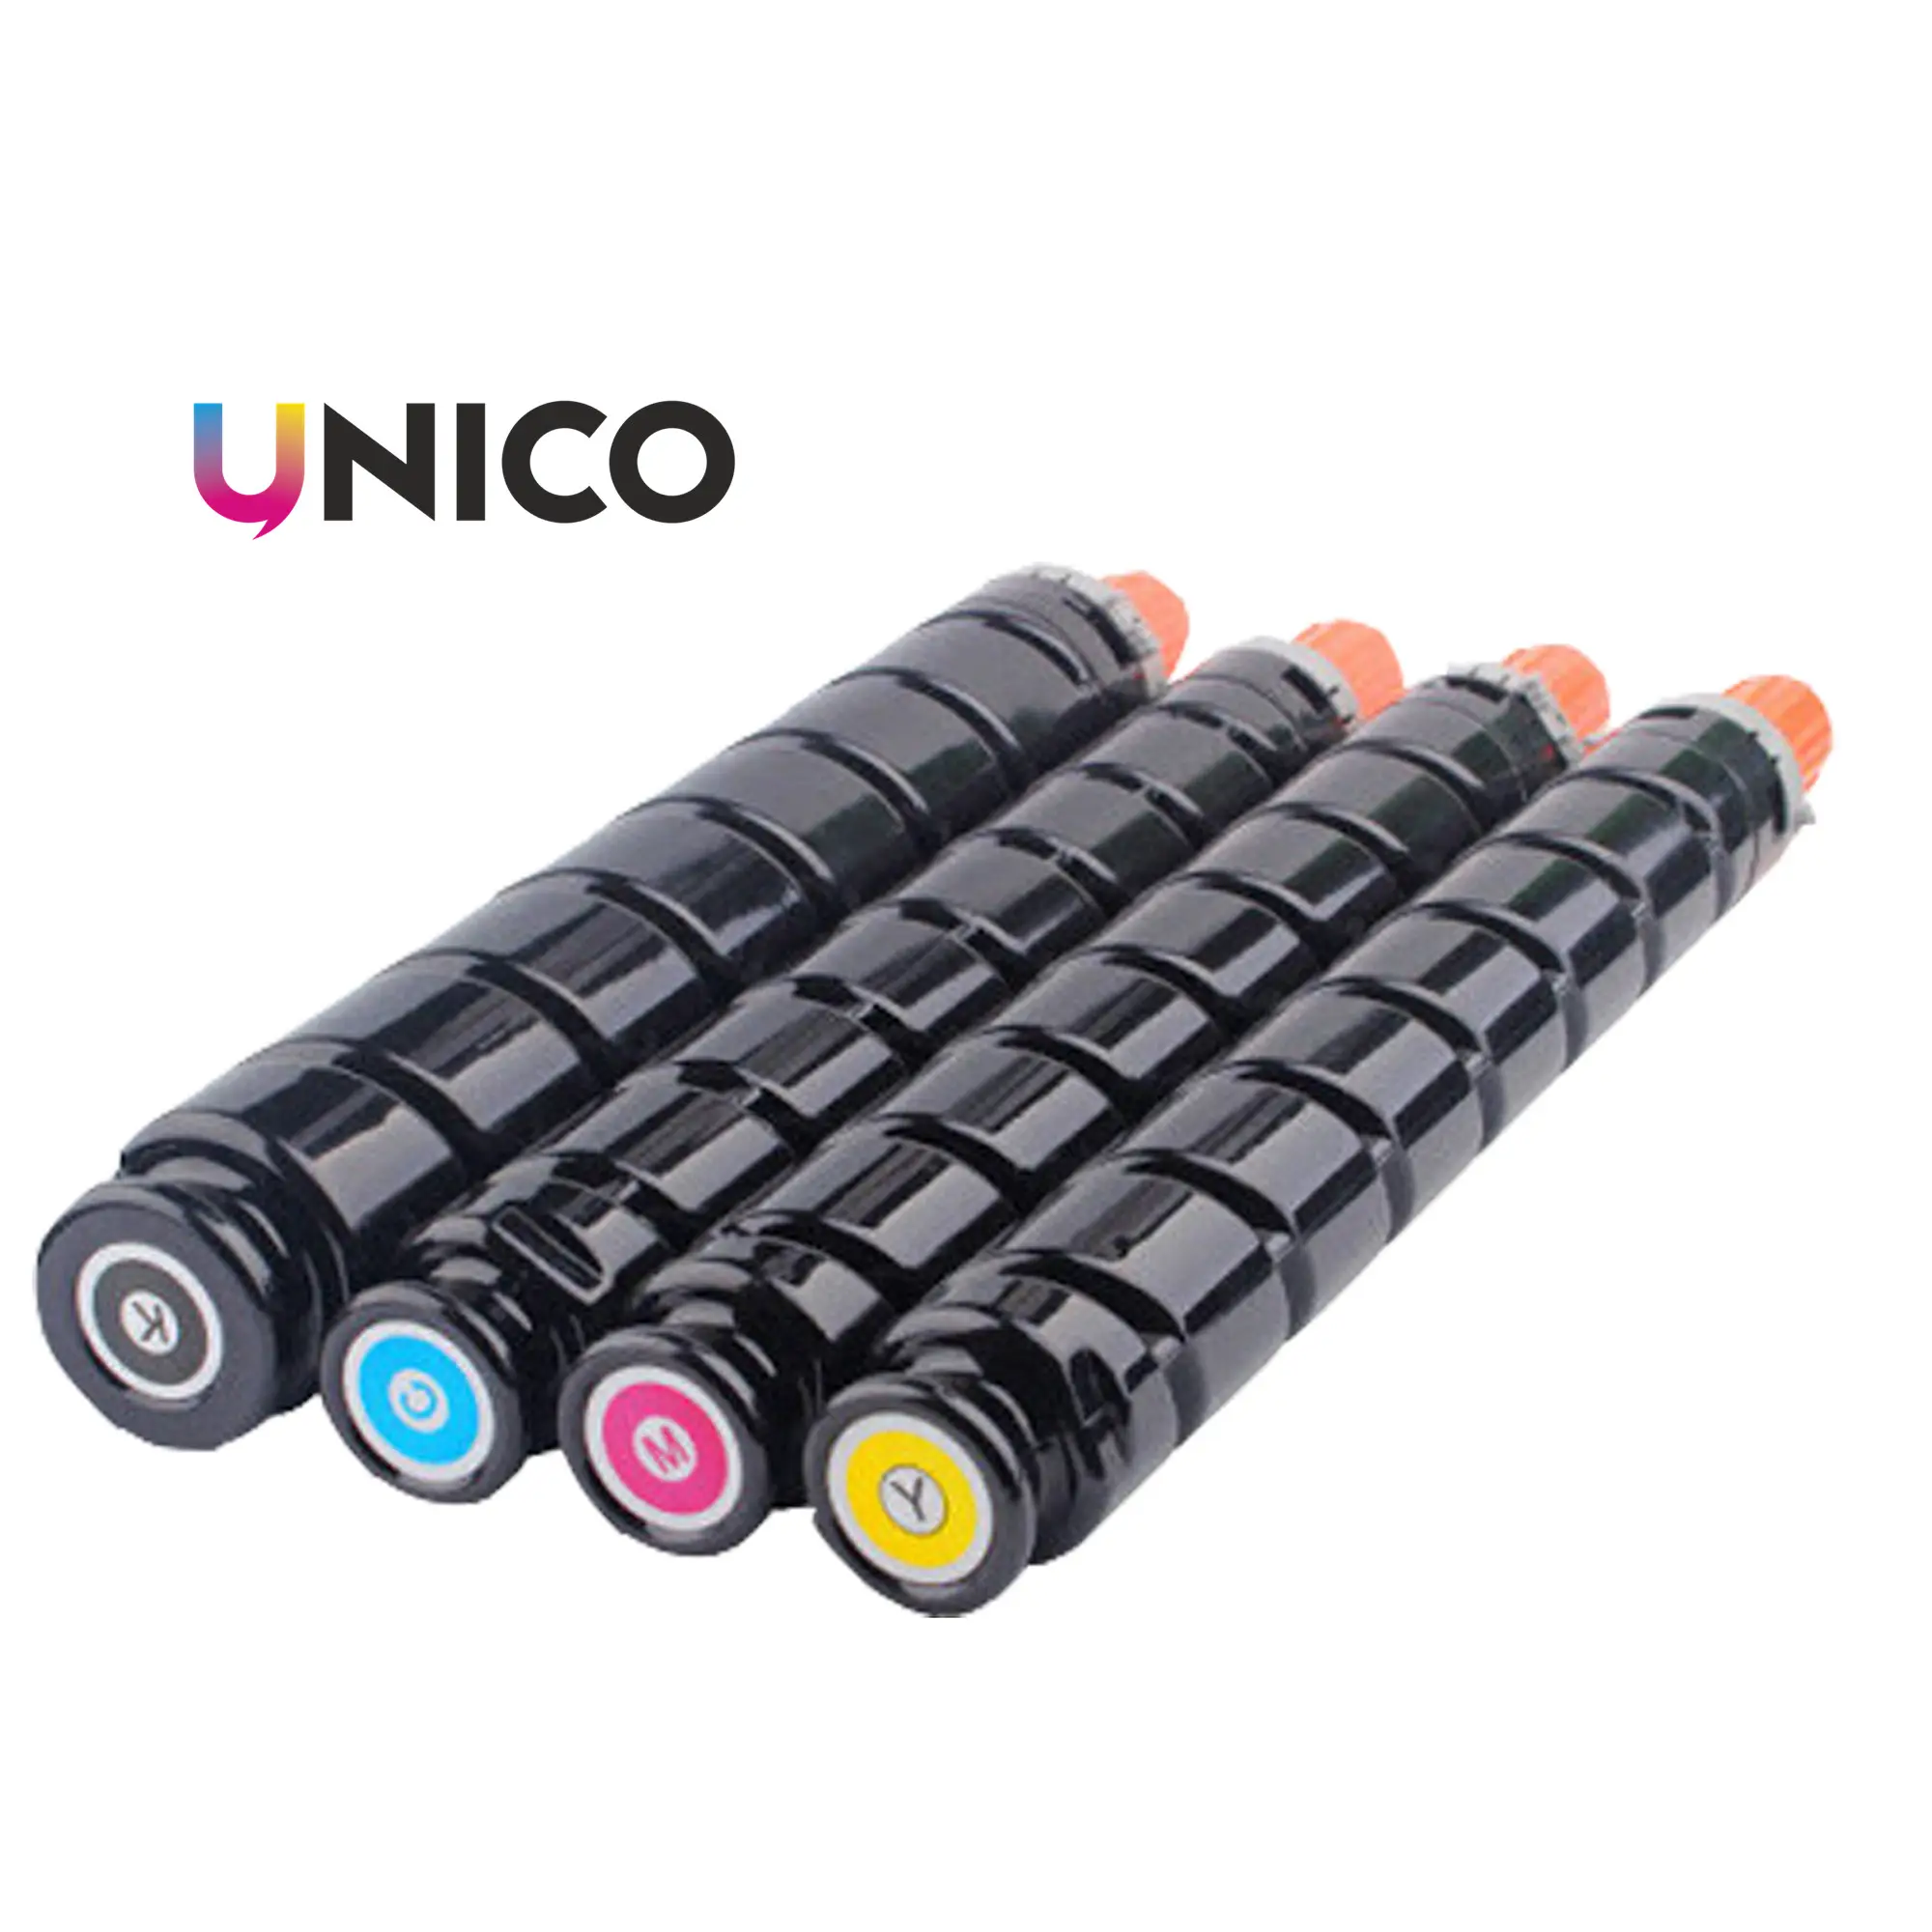 UNICO Cartucho de Tóner de Color Compatible con Canon IR C2020 C2030i, Calidad Premium, GPR36, NPG52, GPR36, 1, 2, 1, 2, 1, 2